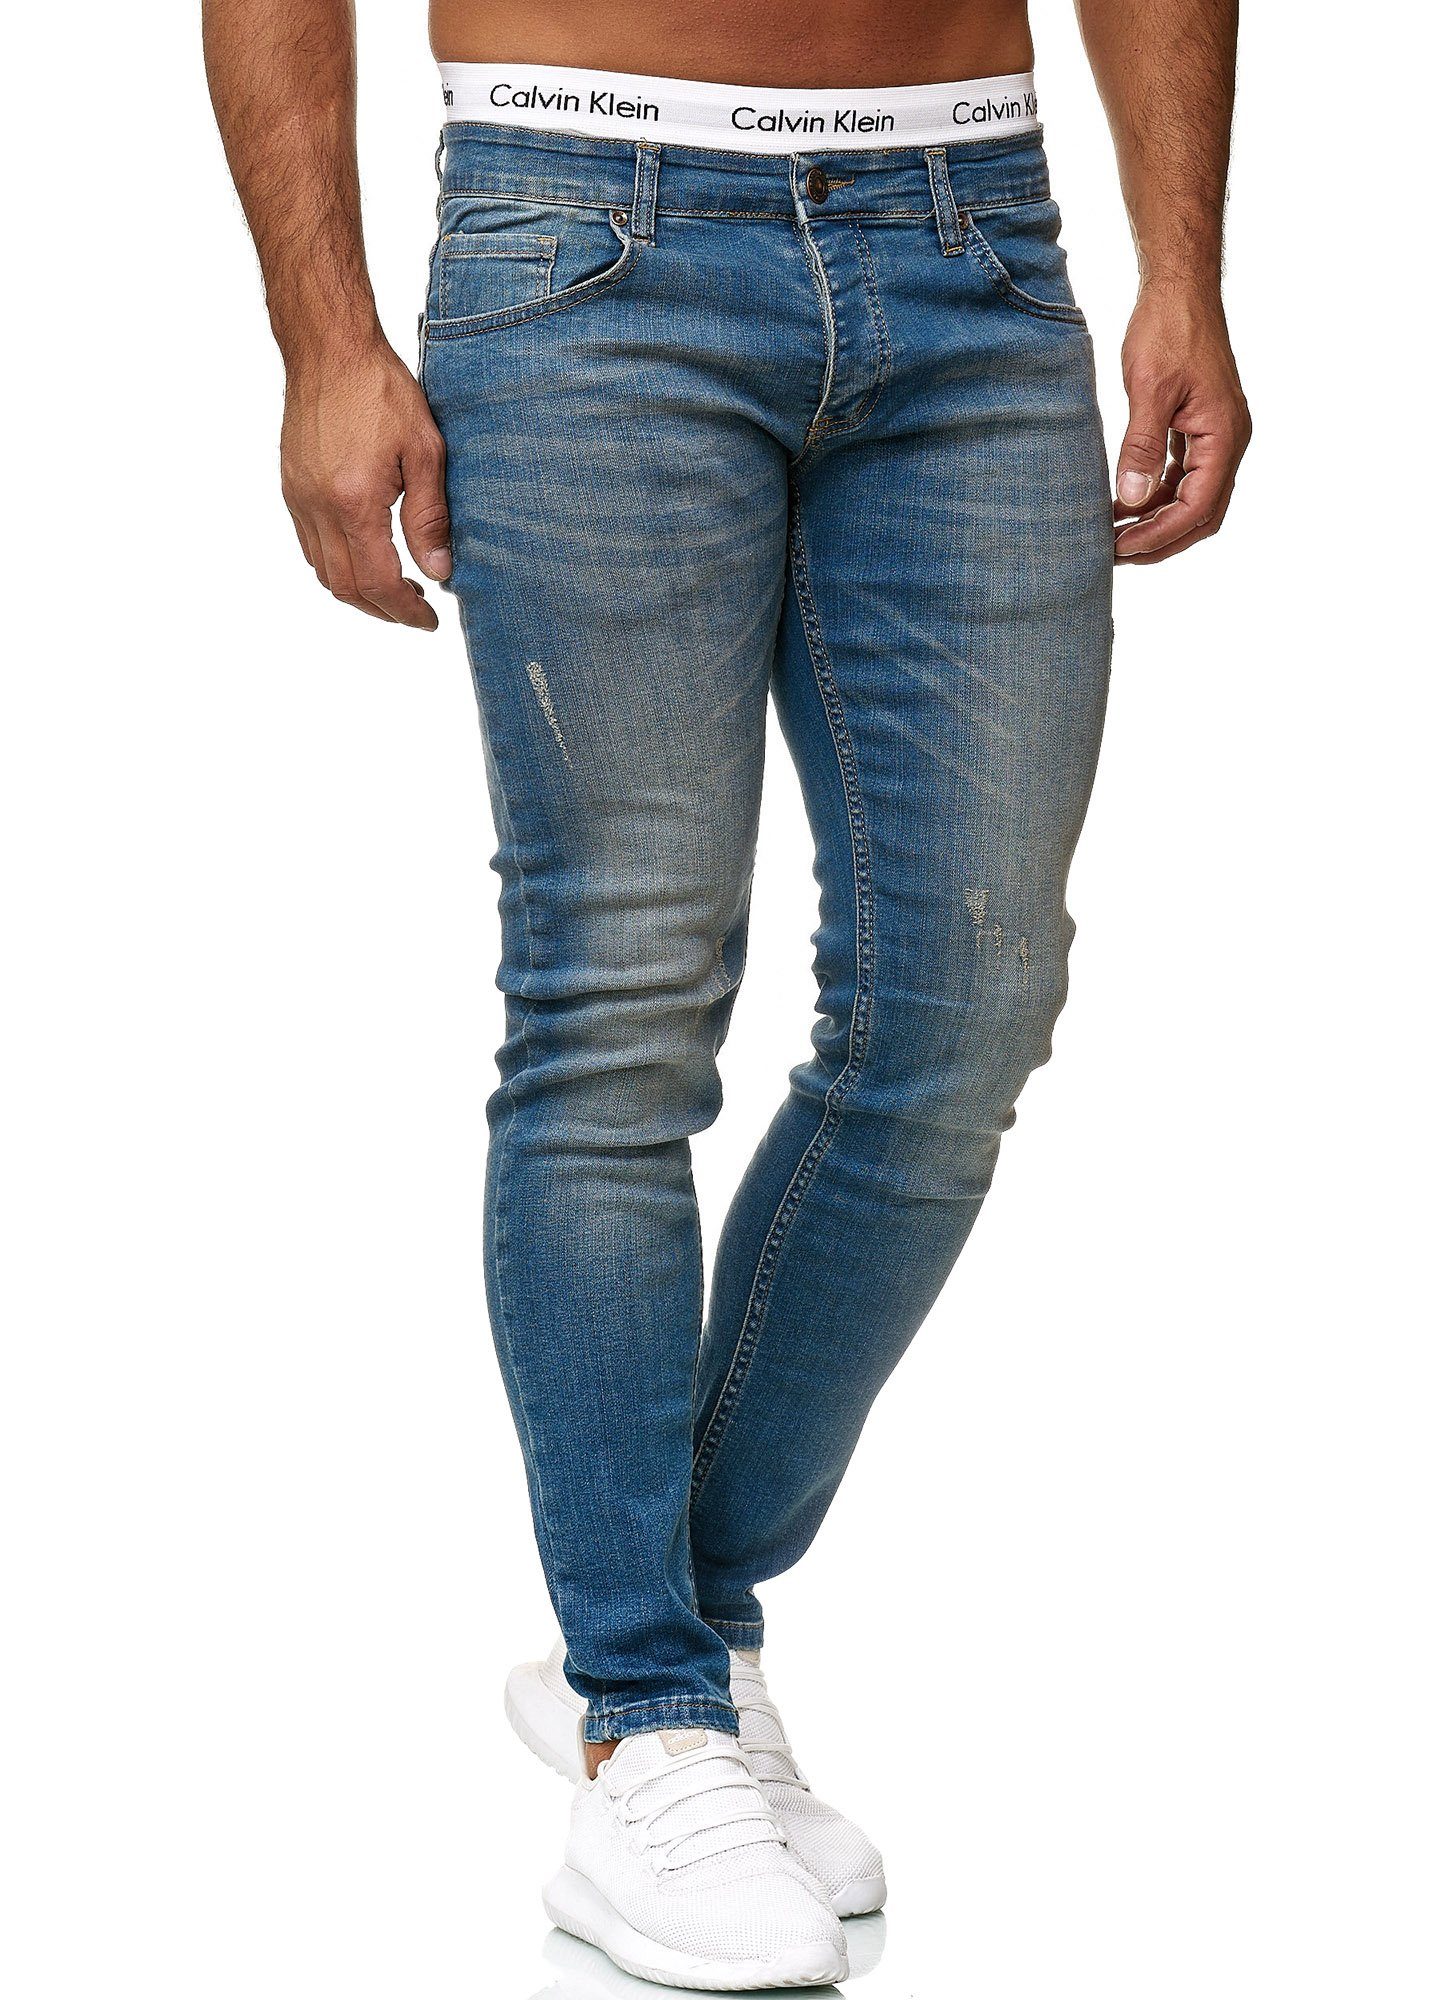 Basic Designer Hose Regular Blue Jeanshose Code47 Code47 Jeans Fit Skinny Skinny-fit-Jeans Herren 613 Dirty Used